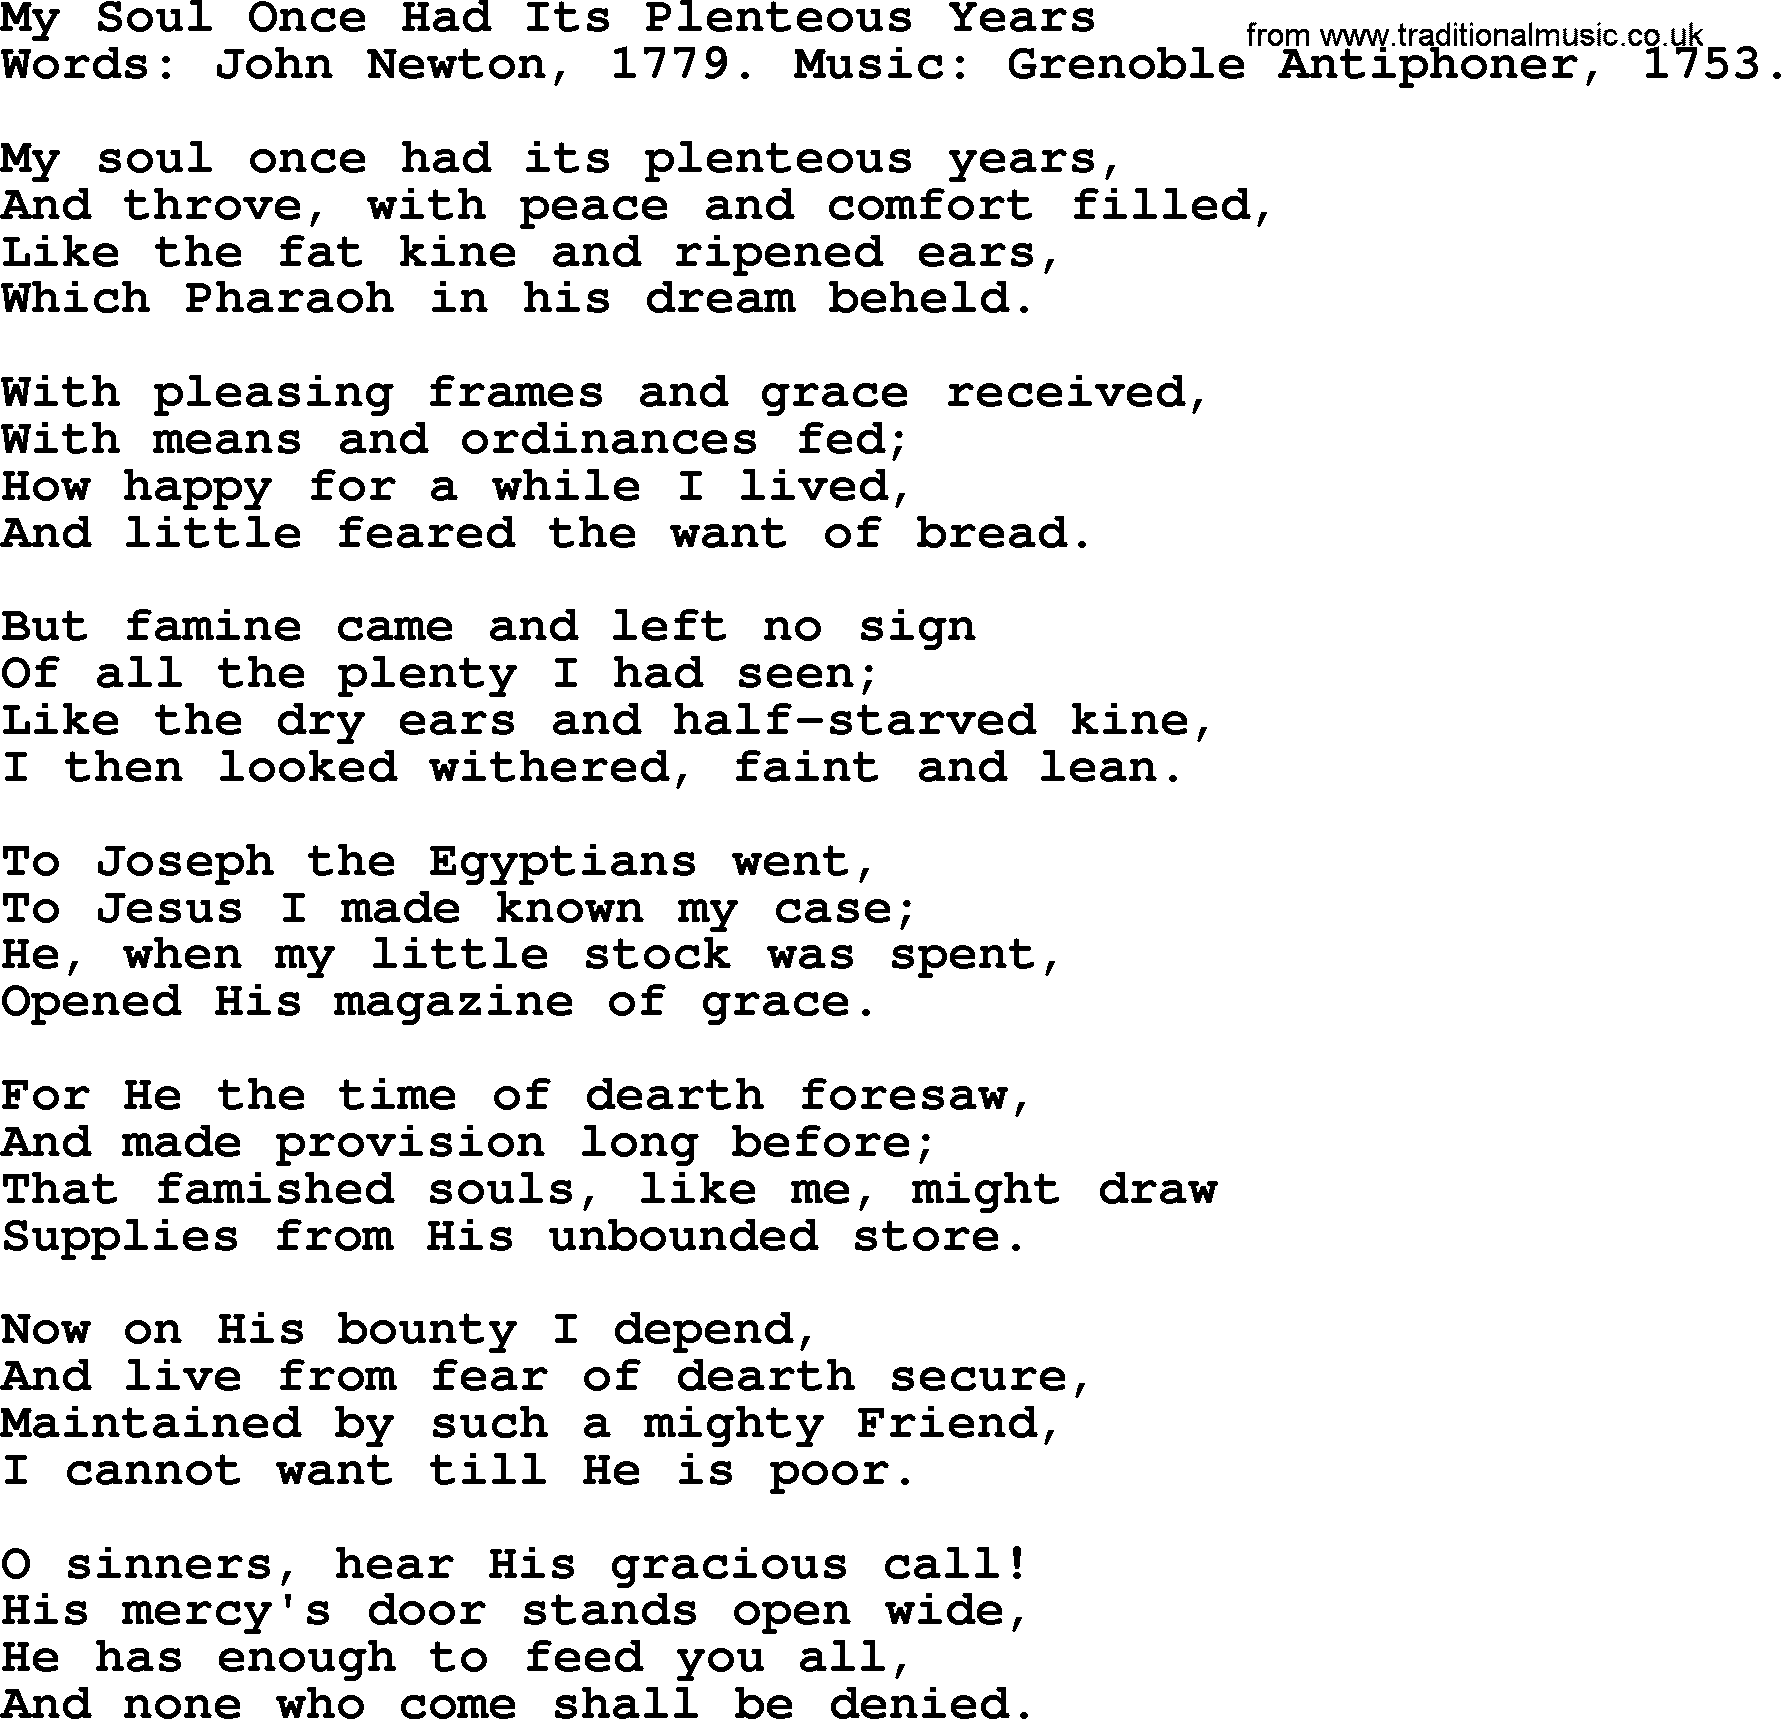 John Newton hymn: My Soul Once Had Its Plenteous Years, lyrics